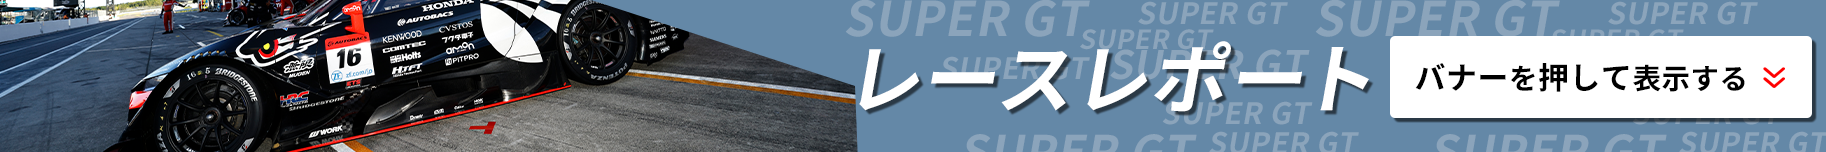 SUPER GTのレポート